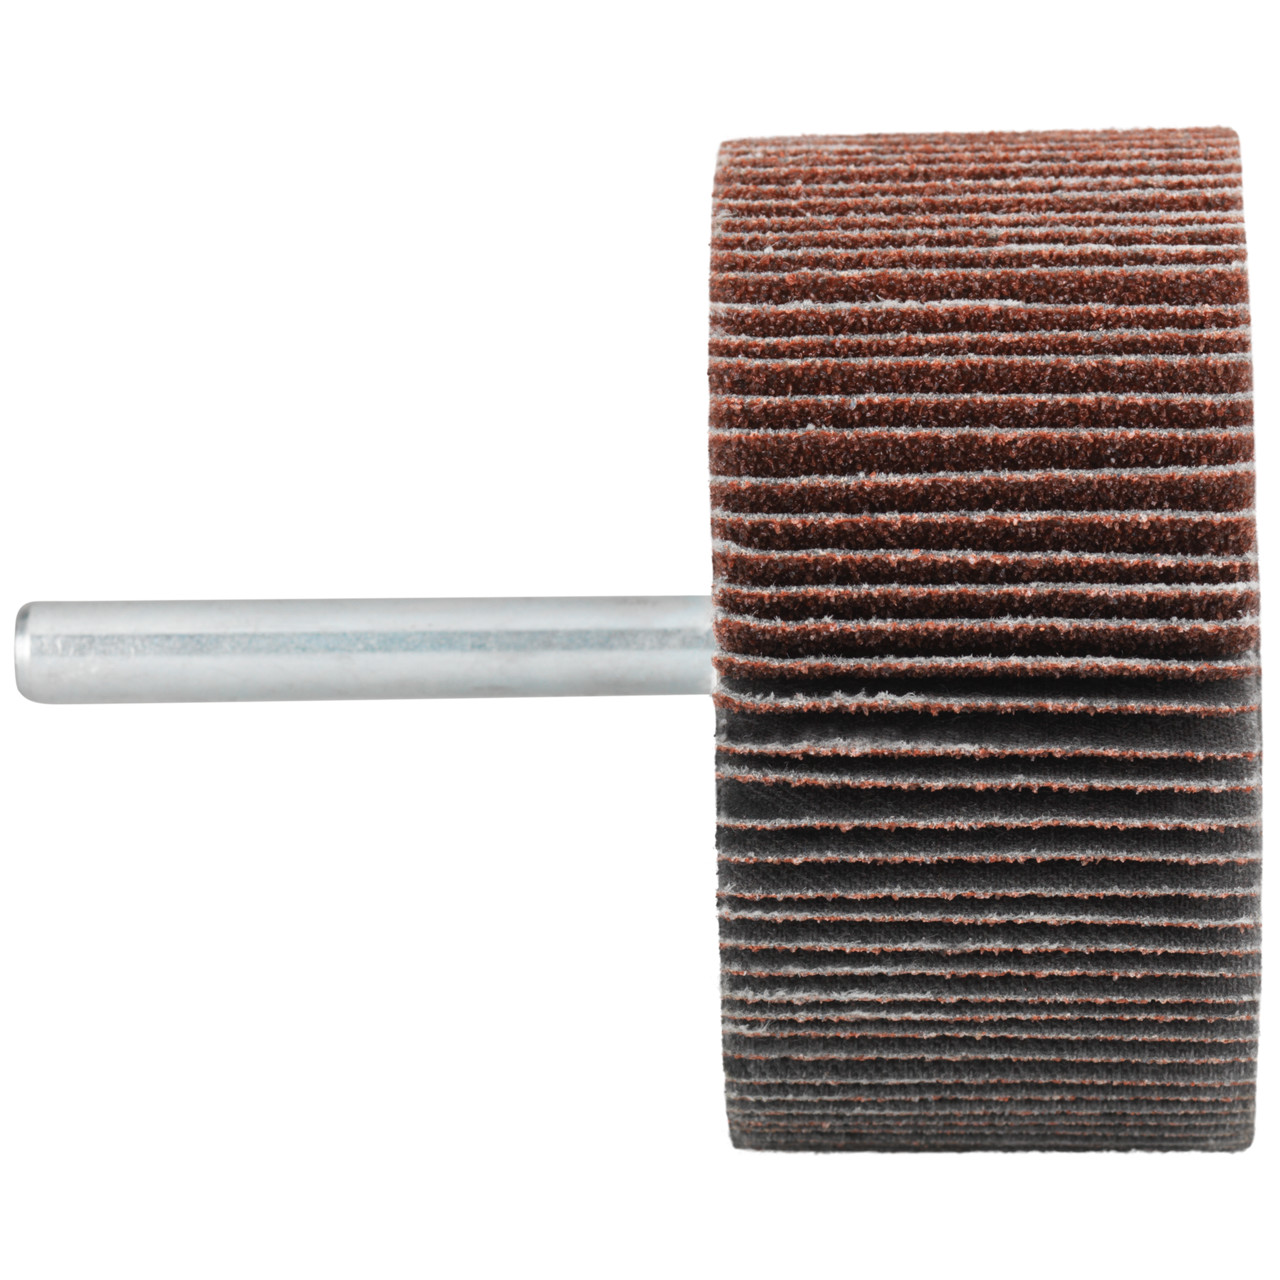 Tyrolit A-P01 C X Pennen DxD 30x10 Voor staal, roestvast staal en non-ferrometalen, P320, vorm: 52LA, Art. 816875